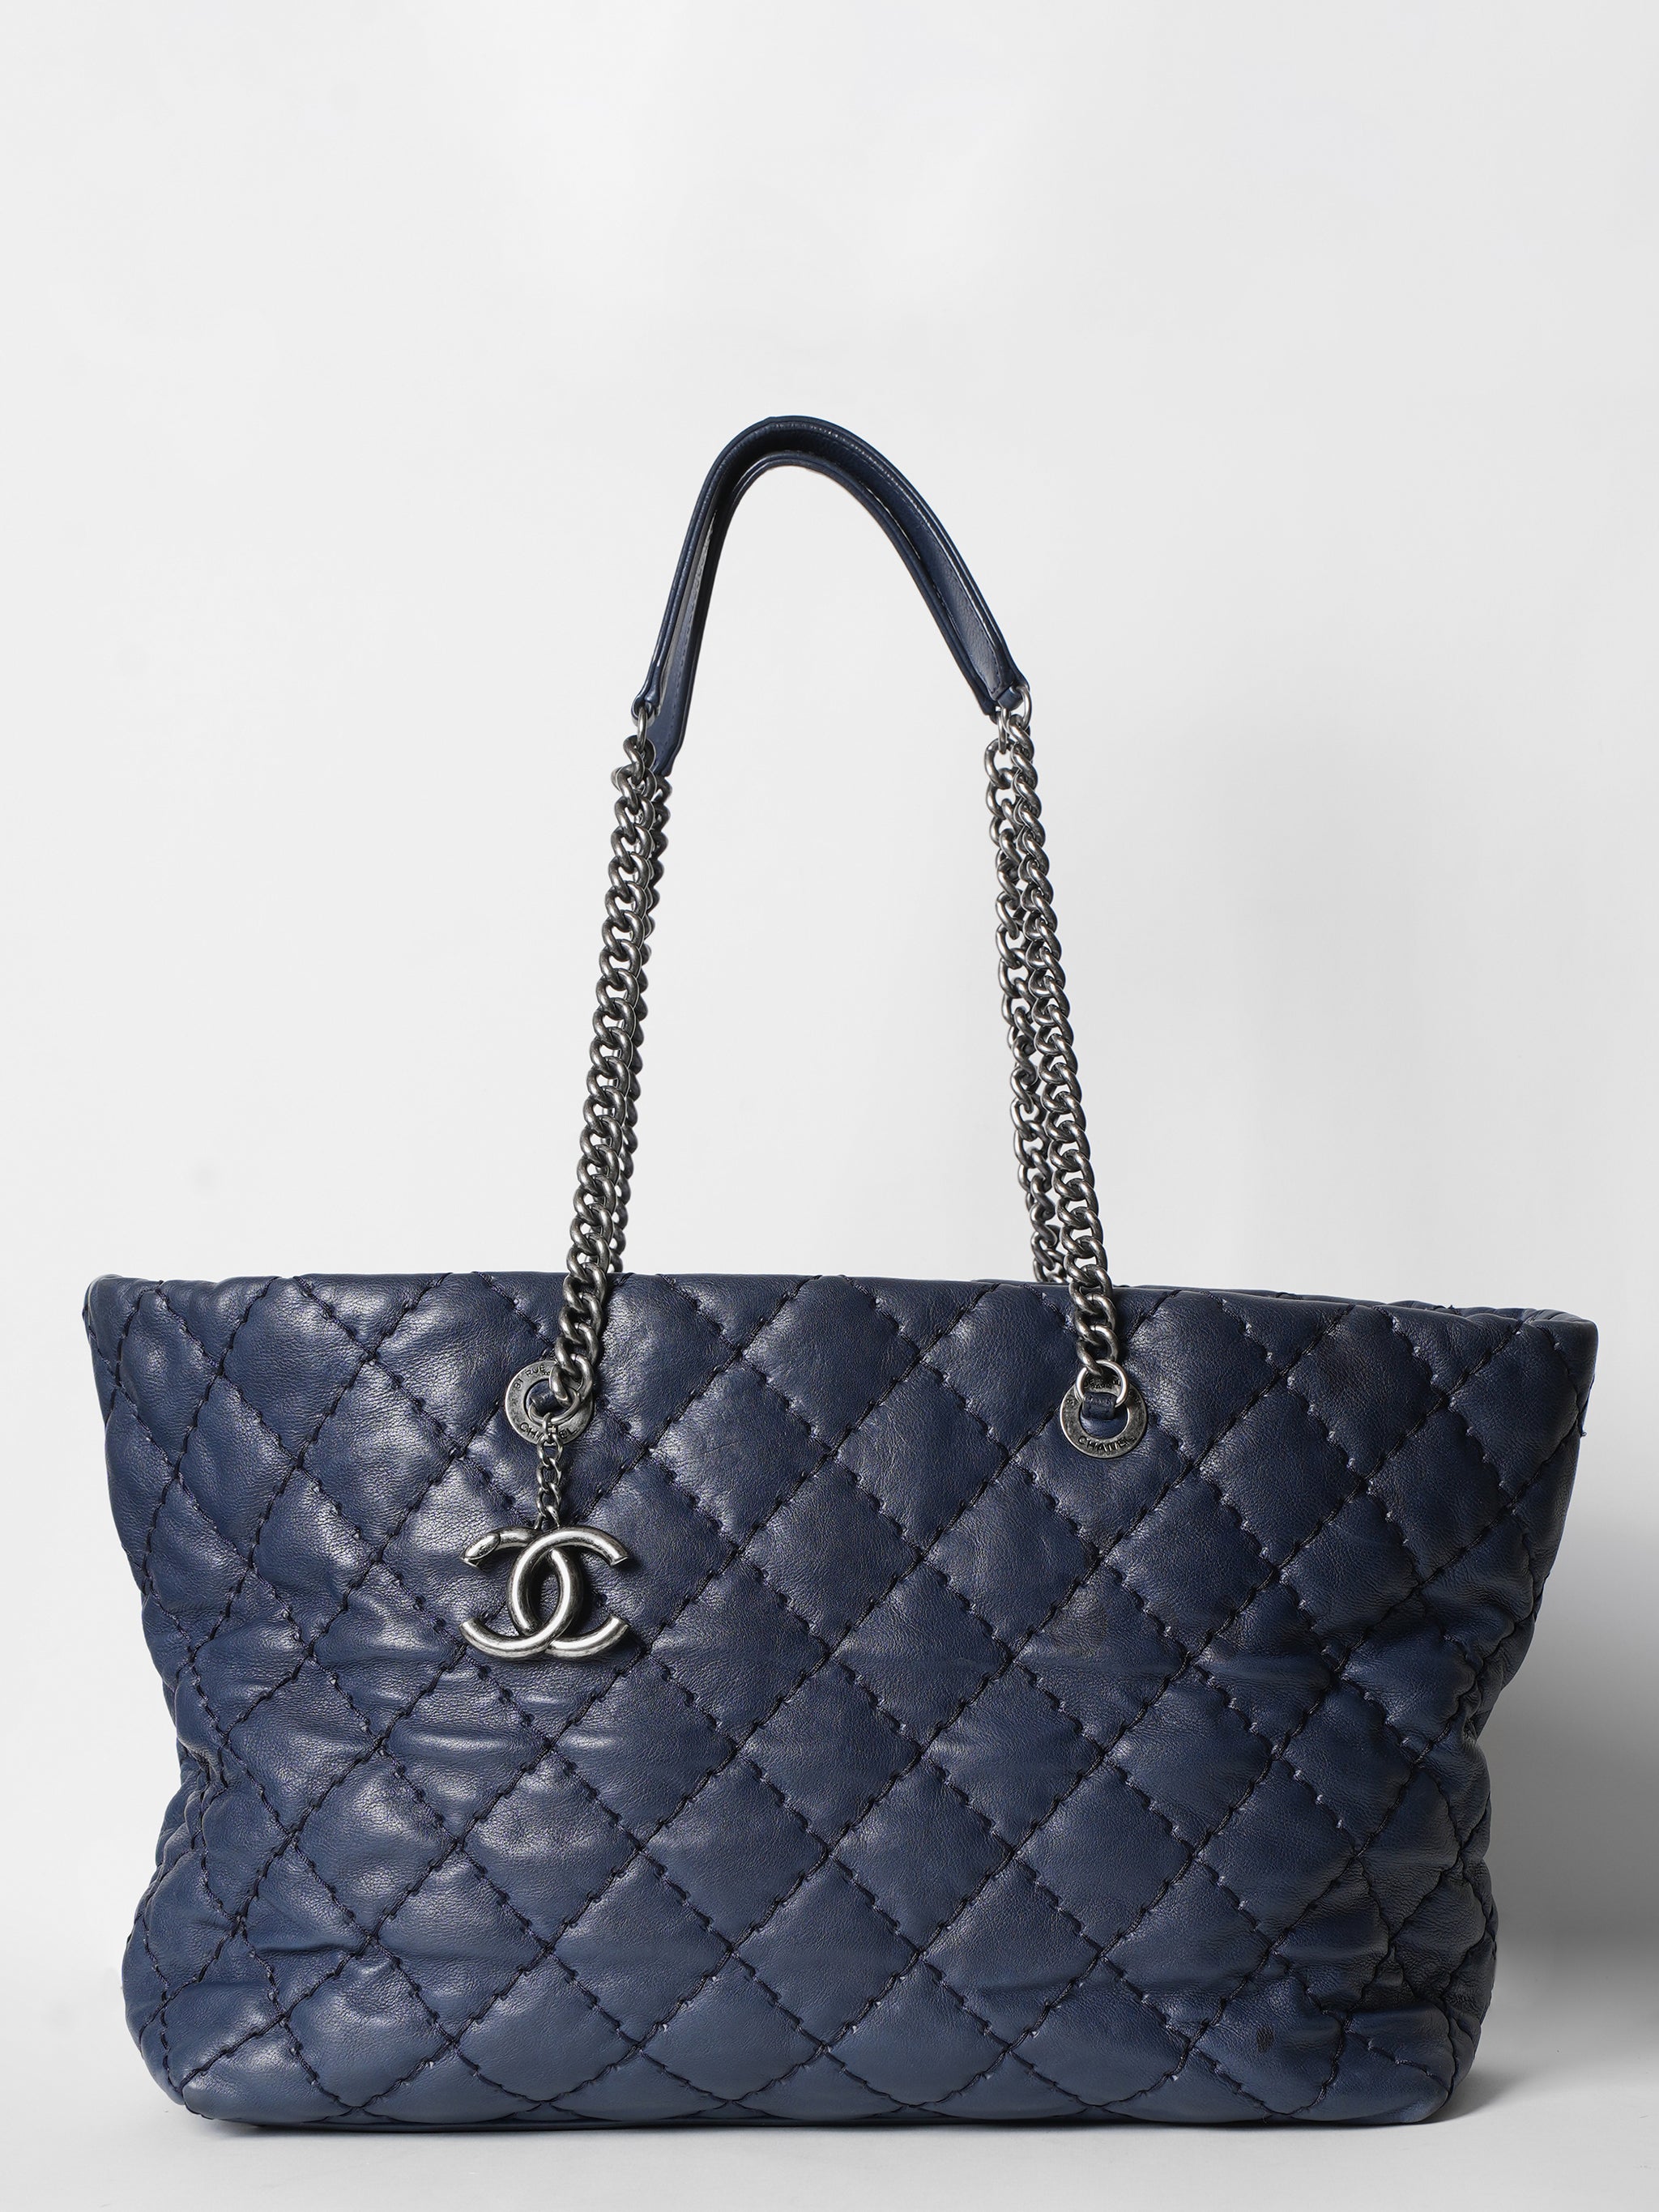 Chanel Stitch Tote Shoulder Bag